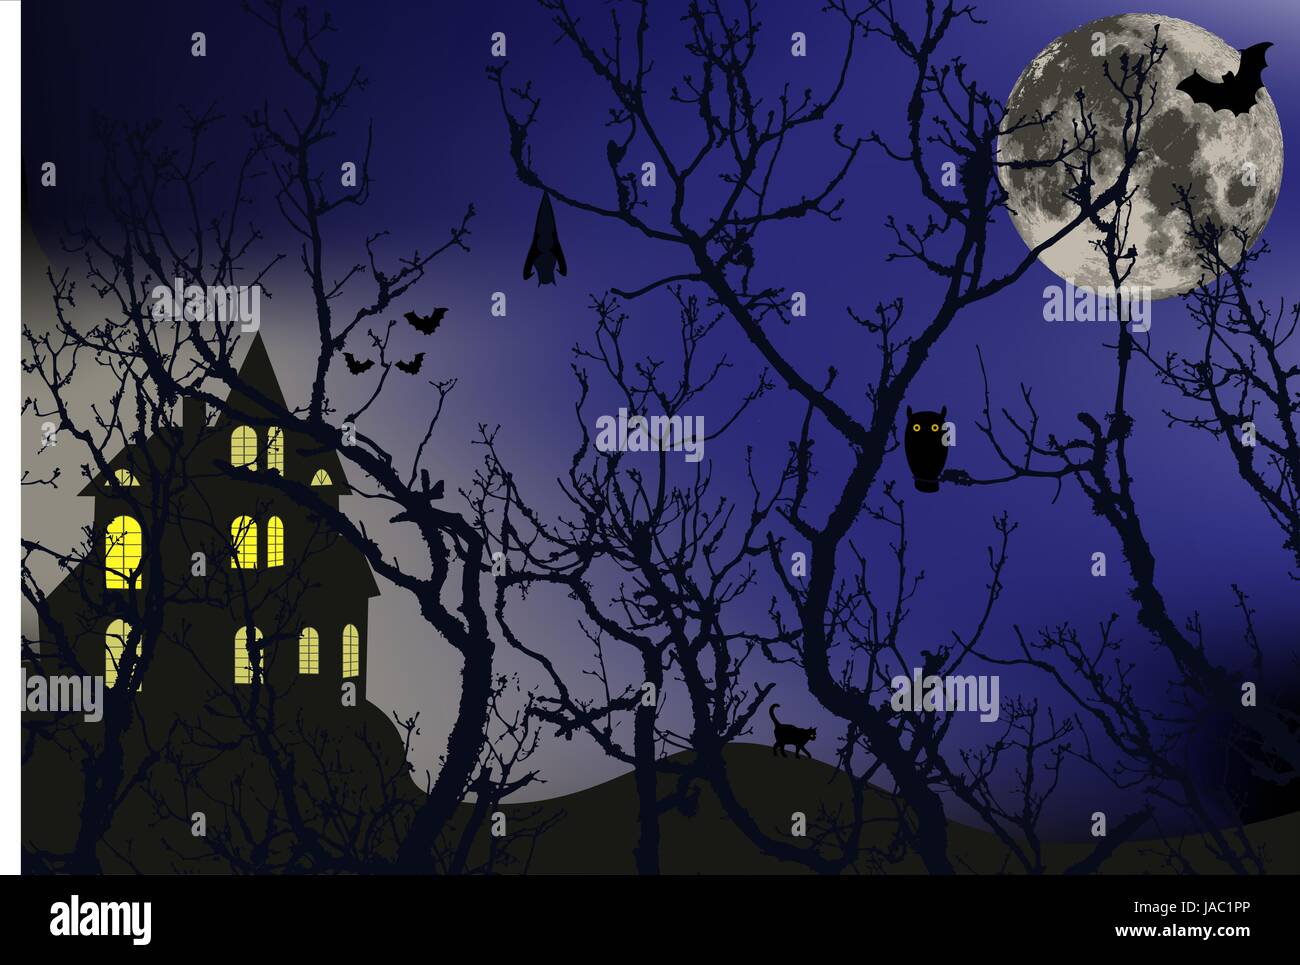 Zauberwald mit Tieren das Fell und einen großen Mond hinter den Ästen der Bäume, Vektor-illustration Stock Vektor